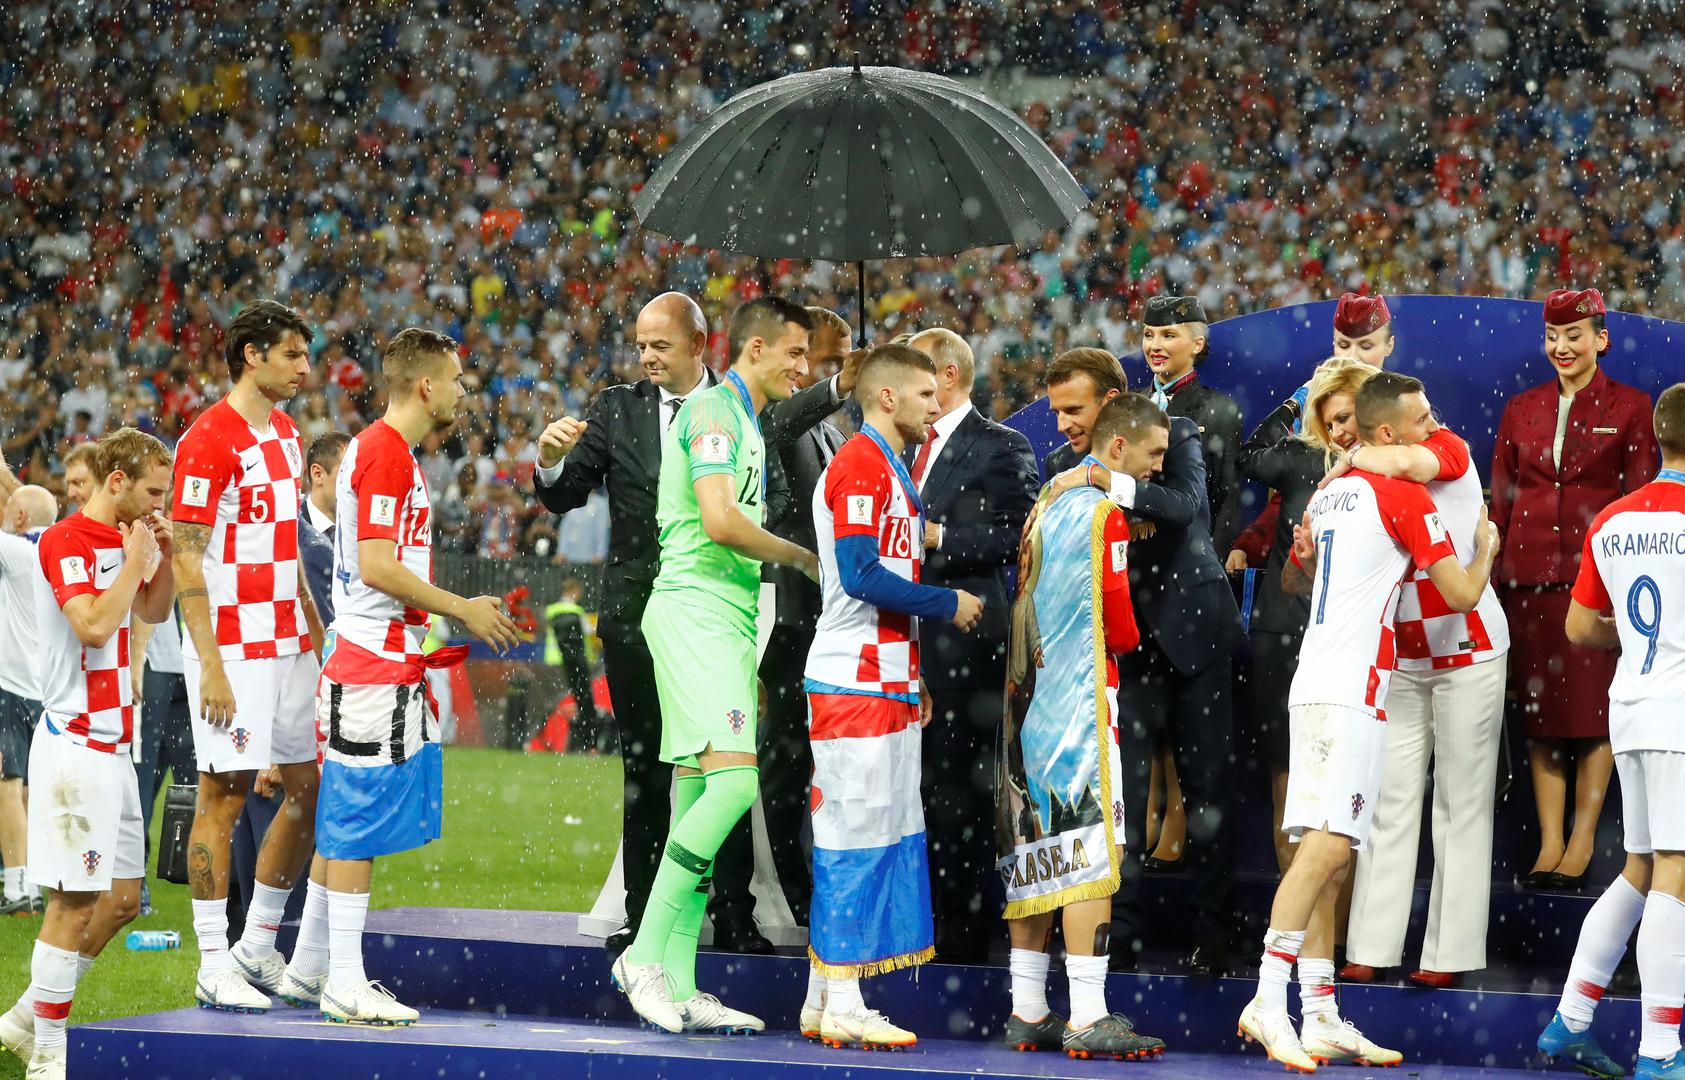 Samo jedan kišobran nad čelnicima tri države na dodjeli medalja na stadionu Lužnjiki nakon finala Svjetskog prvenstva fotografija je koja je obišla svijet.

